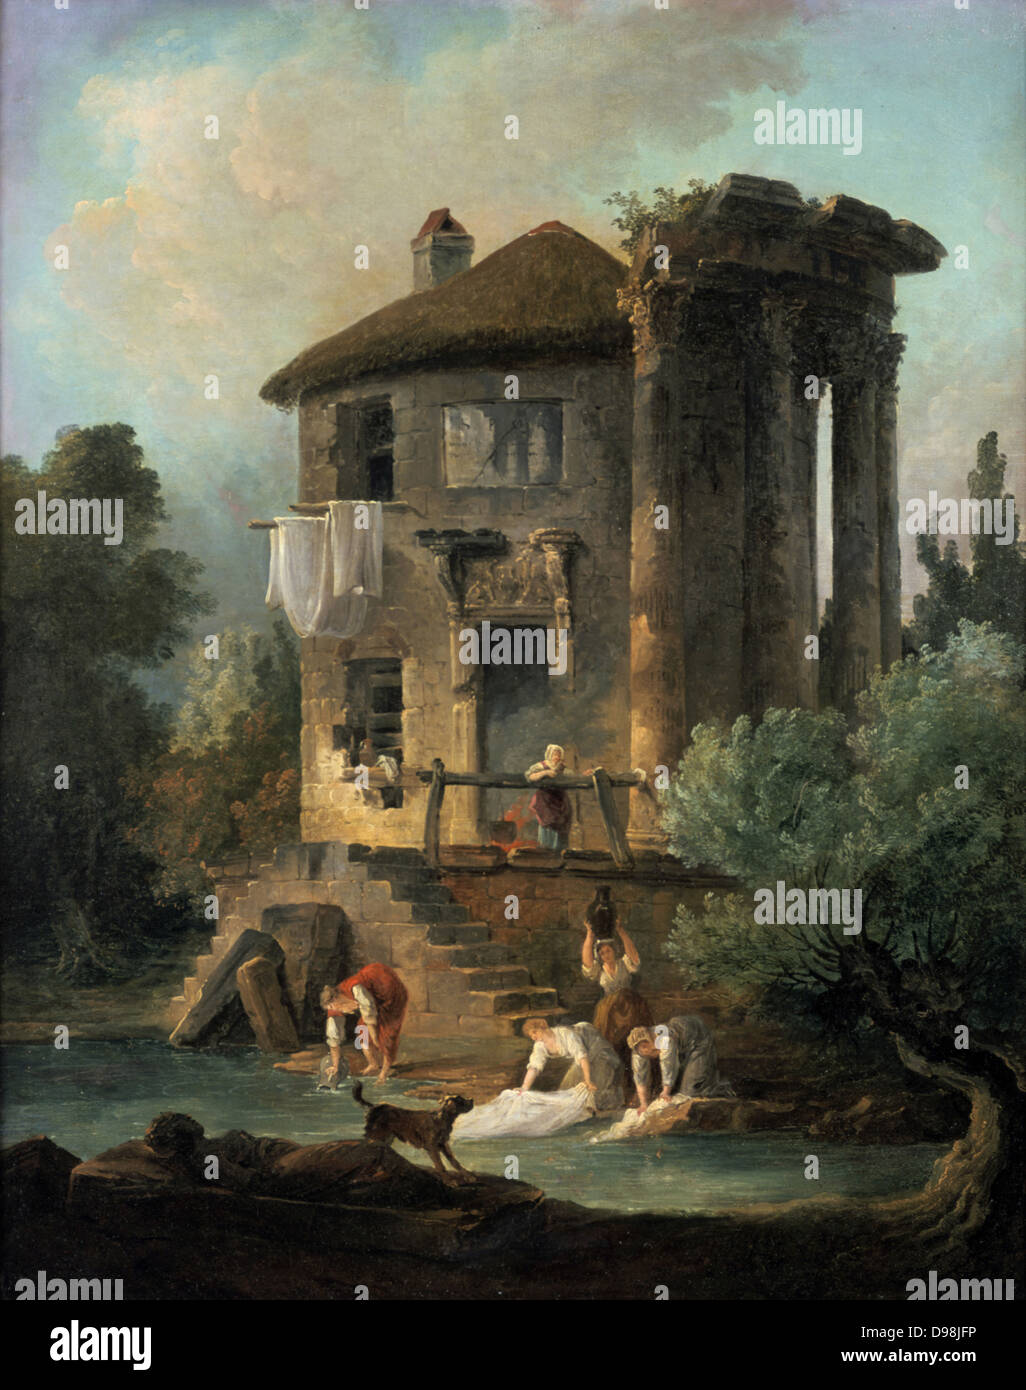 Wäscherinnen außerhalb der Tempel der Sibylle, Tivoli", 1831 Öl auf Leinwand. Lancelot Theodore comte de Turpin de Crisse (1782-1859), französischer Maler. Waschfrau's Cottage in den Ruinen des Tempels. Stockfoto